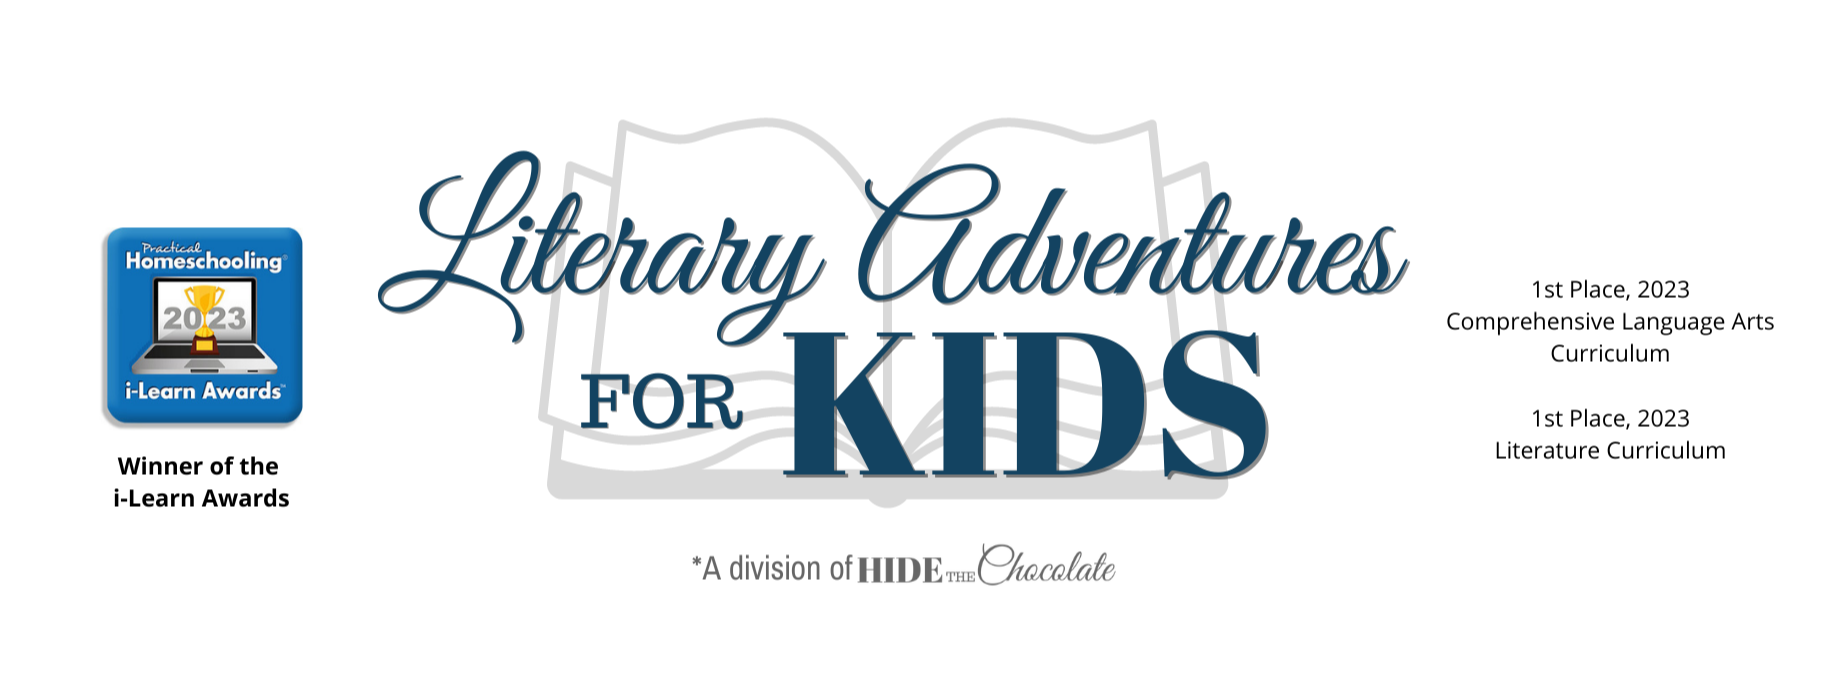 Literary Adventures for Kids logo - Winner of i-Learn Awards